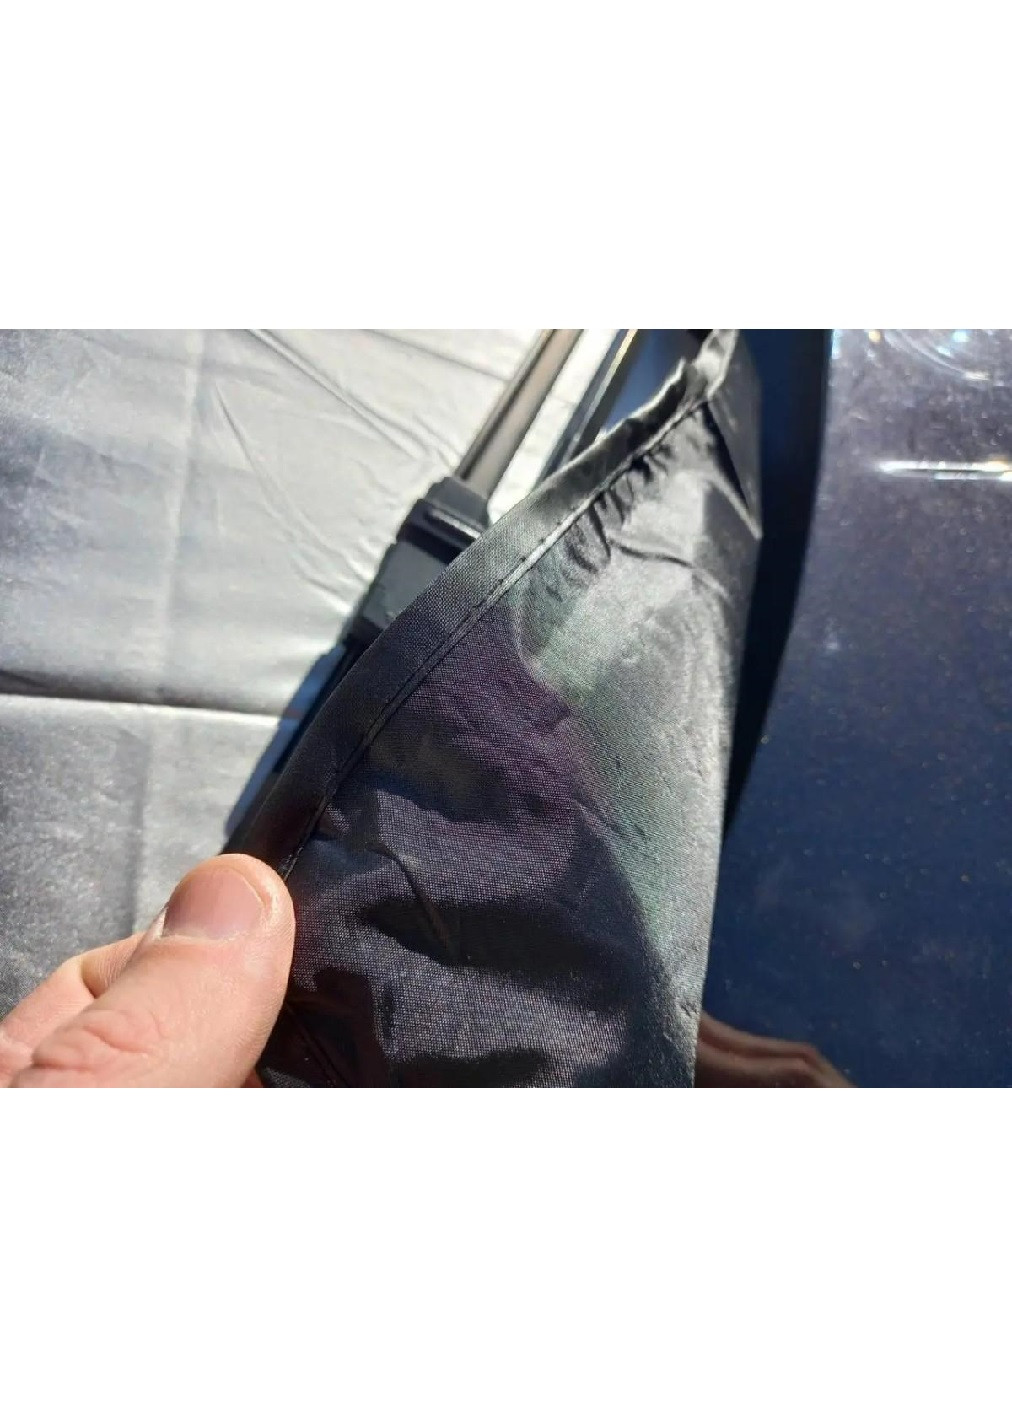 Чехол накладка накидка защитный экран на лобовое стекло машины автомобиля с магнитами 110х150 см (475725-Prob) Серая Unbranded (270827884)